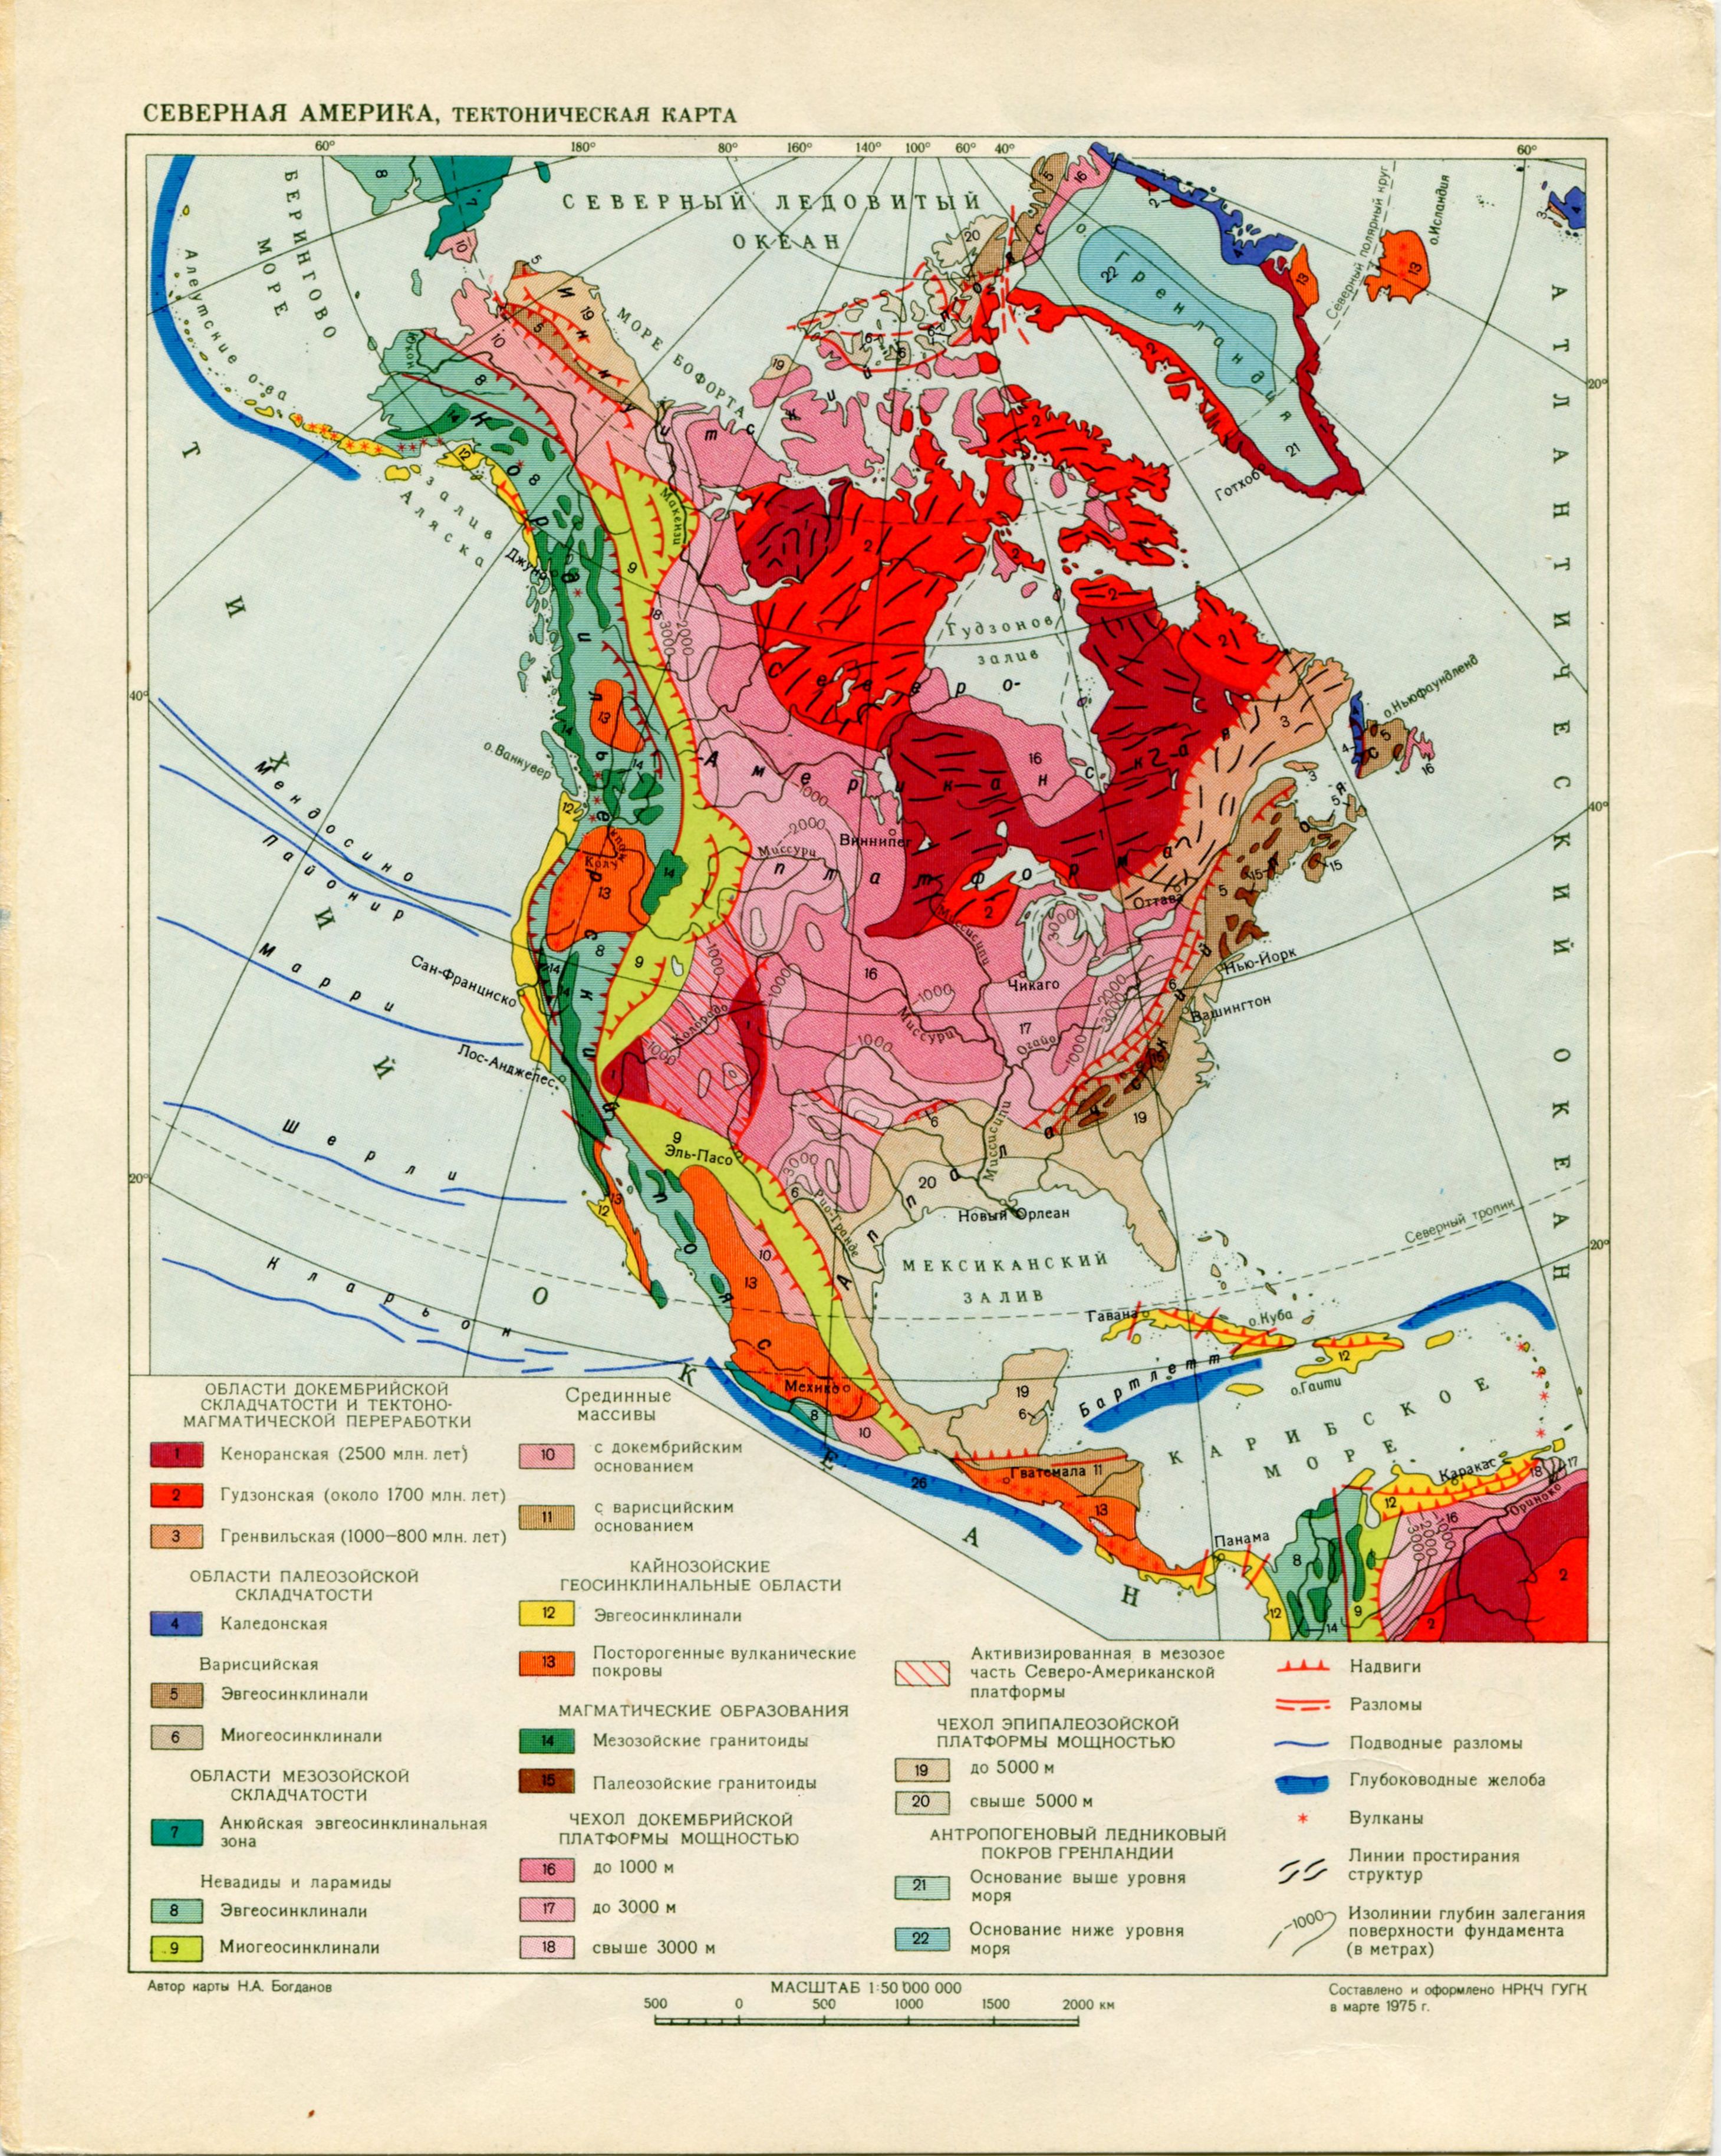 Тектонические структуры северной америки. Геологическая карта Северной Америки. Тектоническая карта Северной Америки. Карта геологического строения Северной Америки.